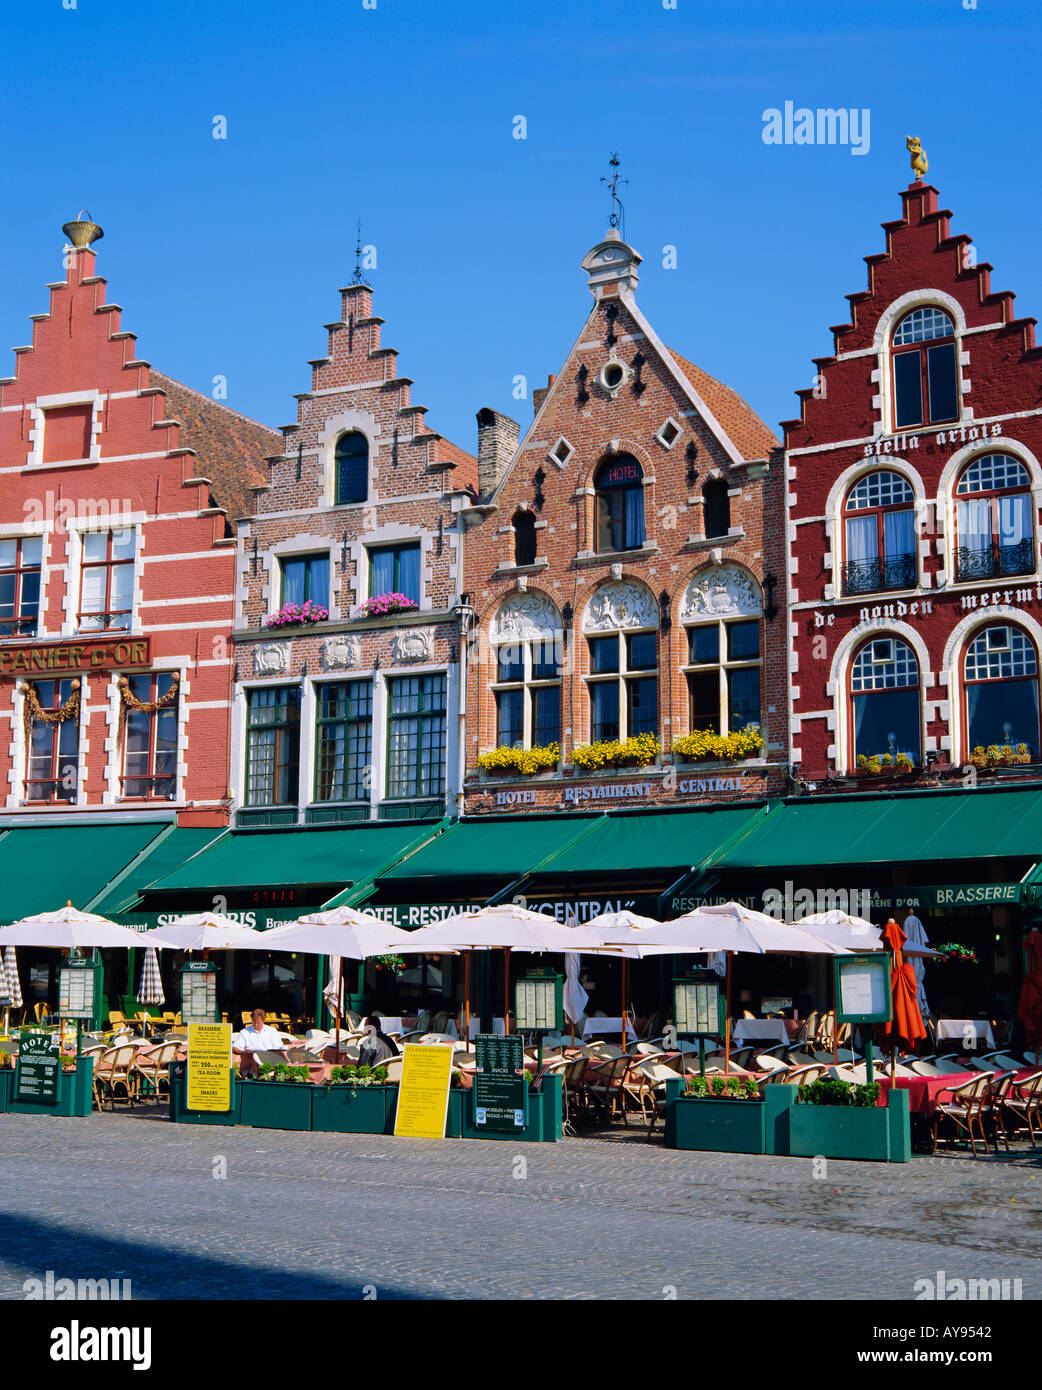 Les cafés de la place principale de la ville, Bruges, Belgique Banque D'Images